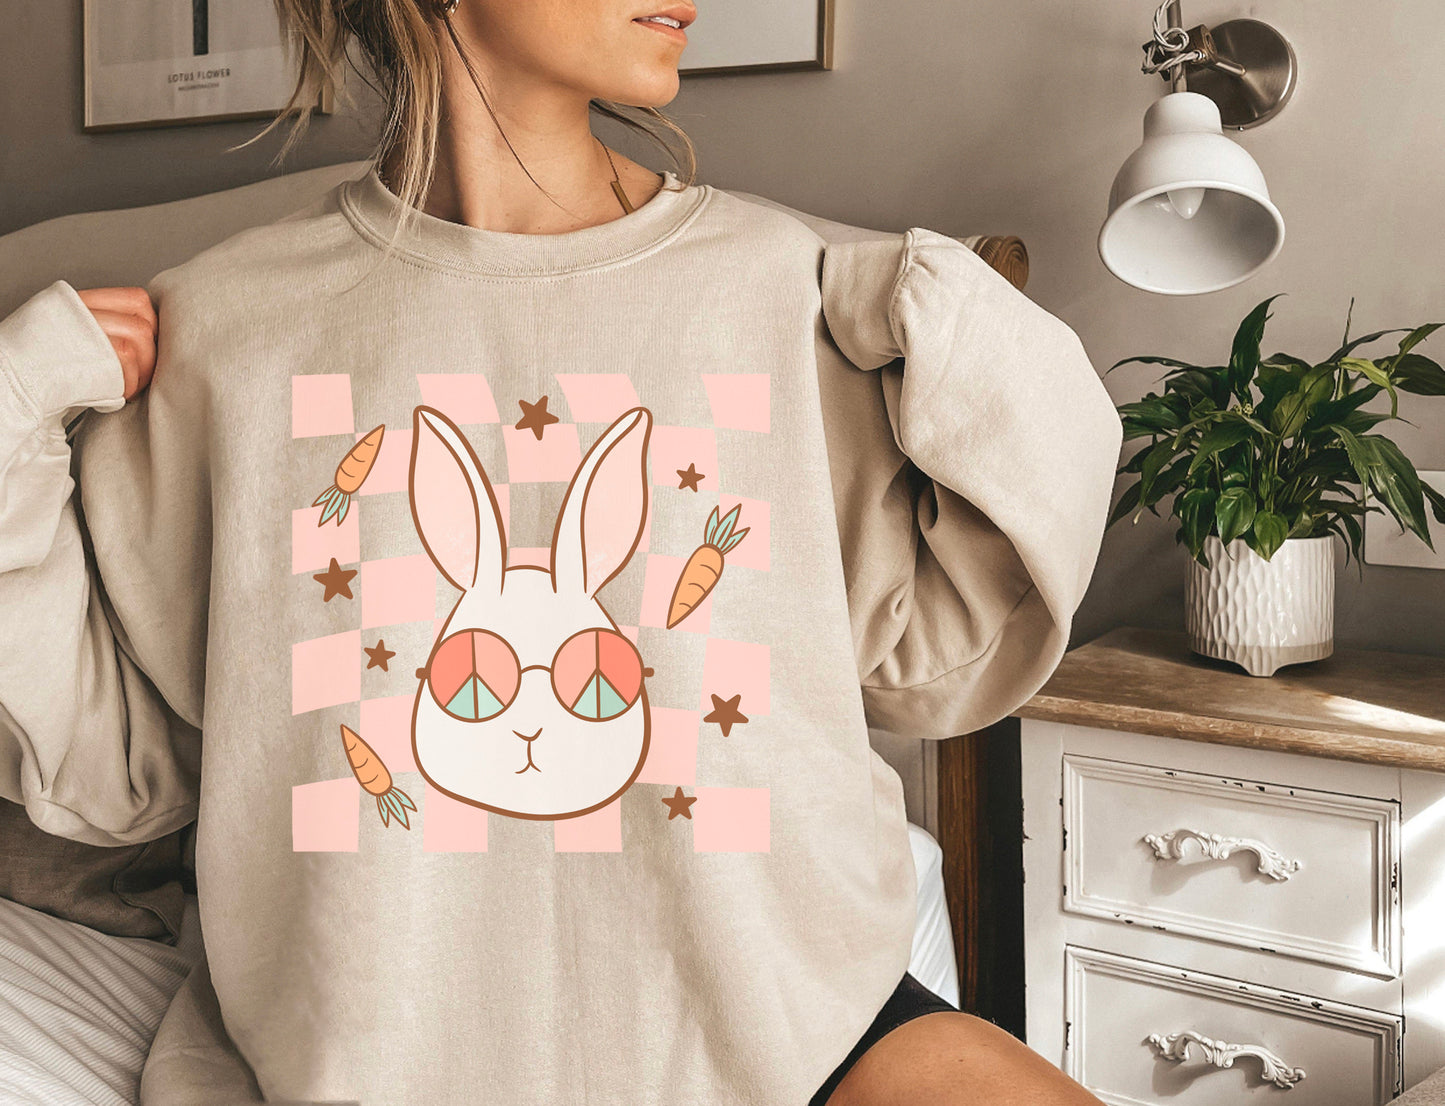 Groovy Bunny Sweatshirt